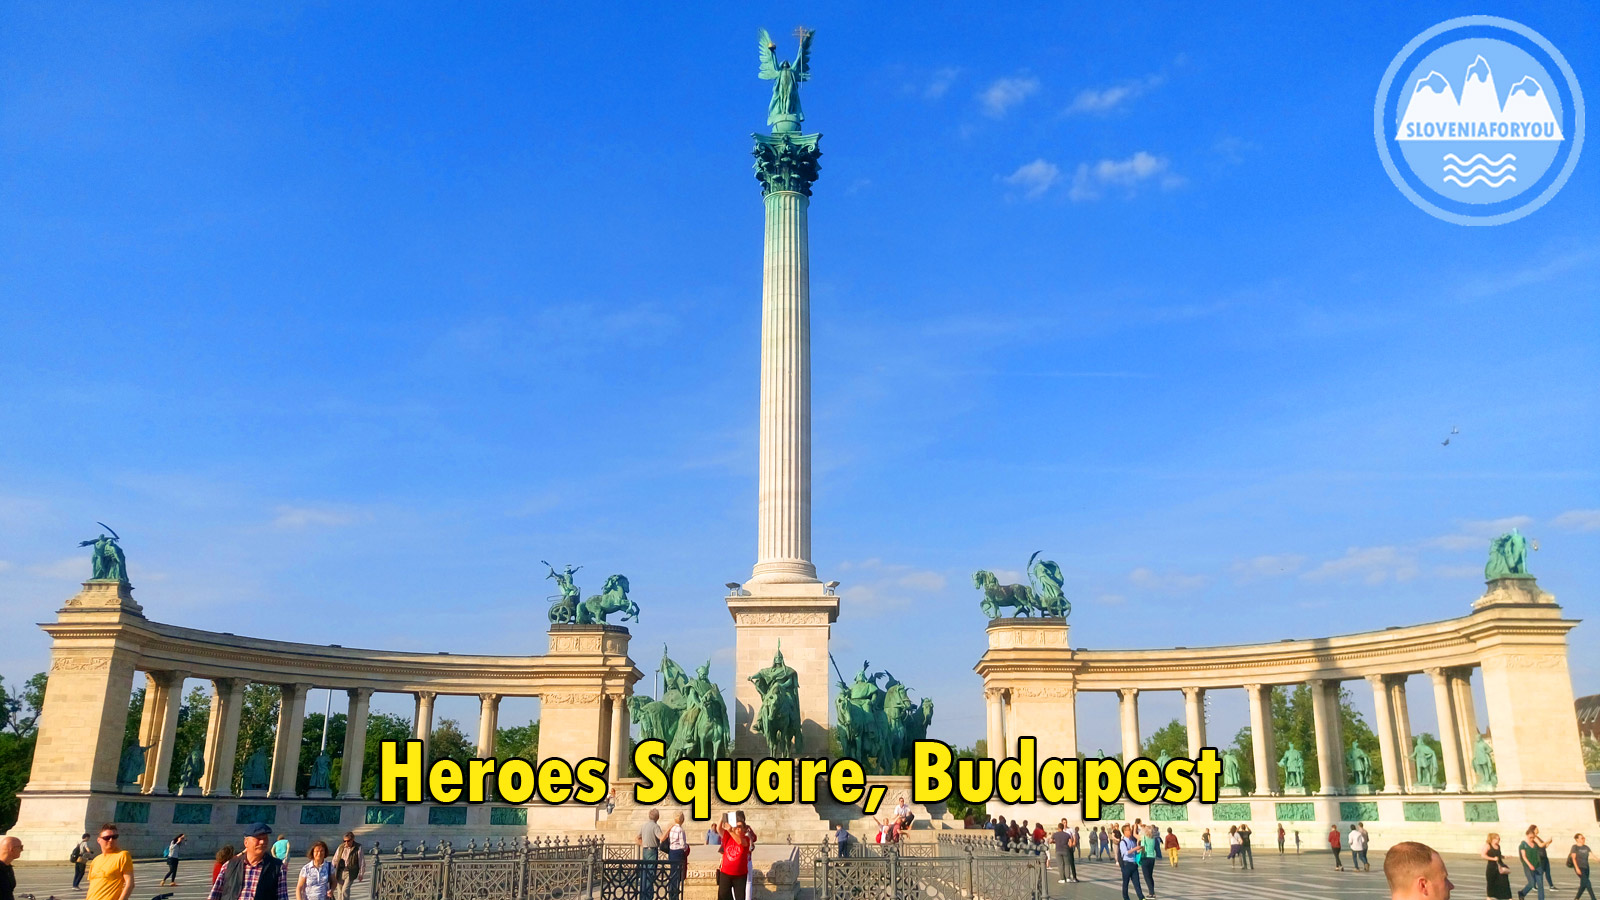 Stunning Heroes Square, Budapest, Sloveniaforyou